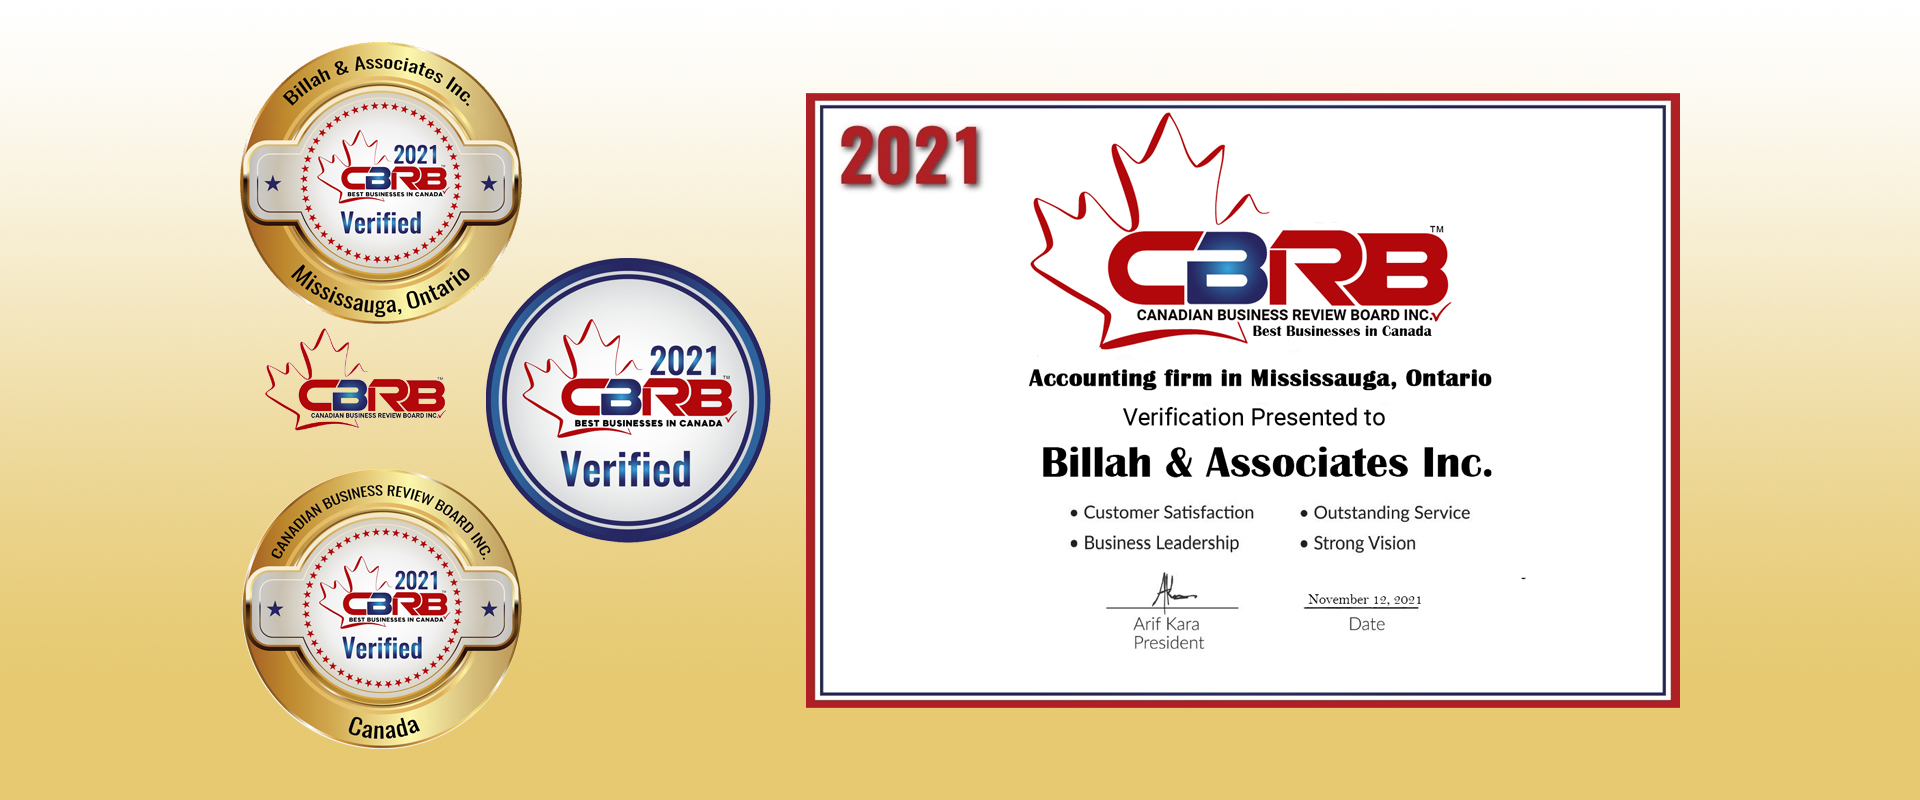 CBRC award 2021